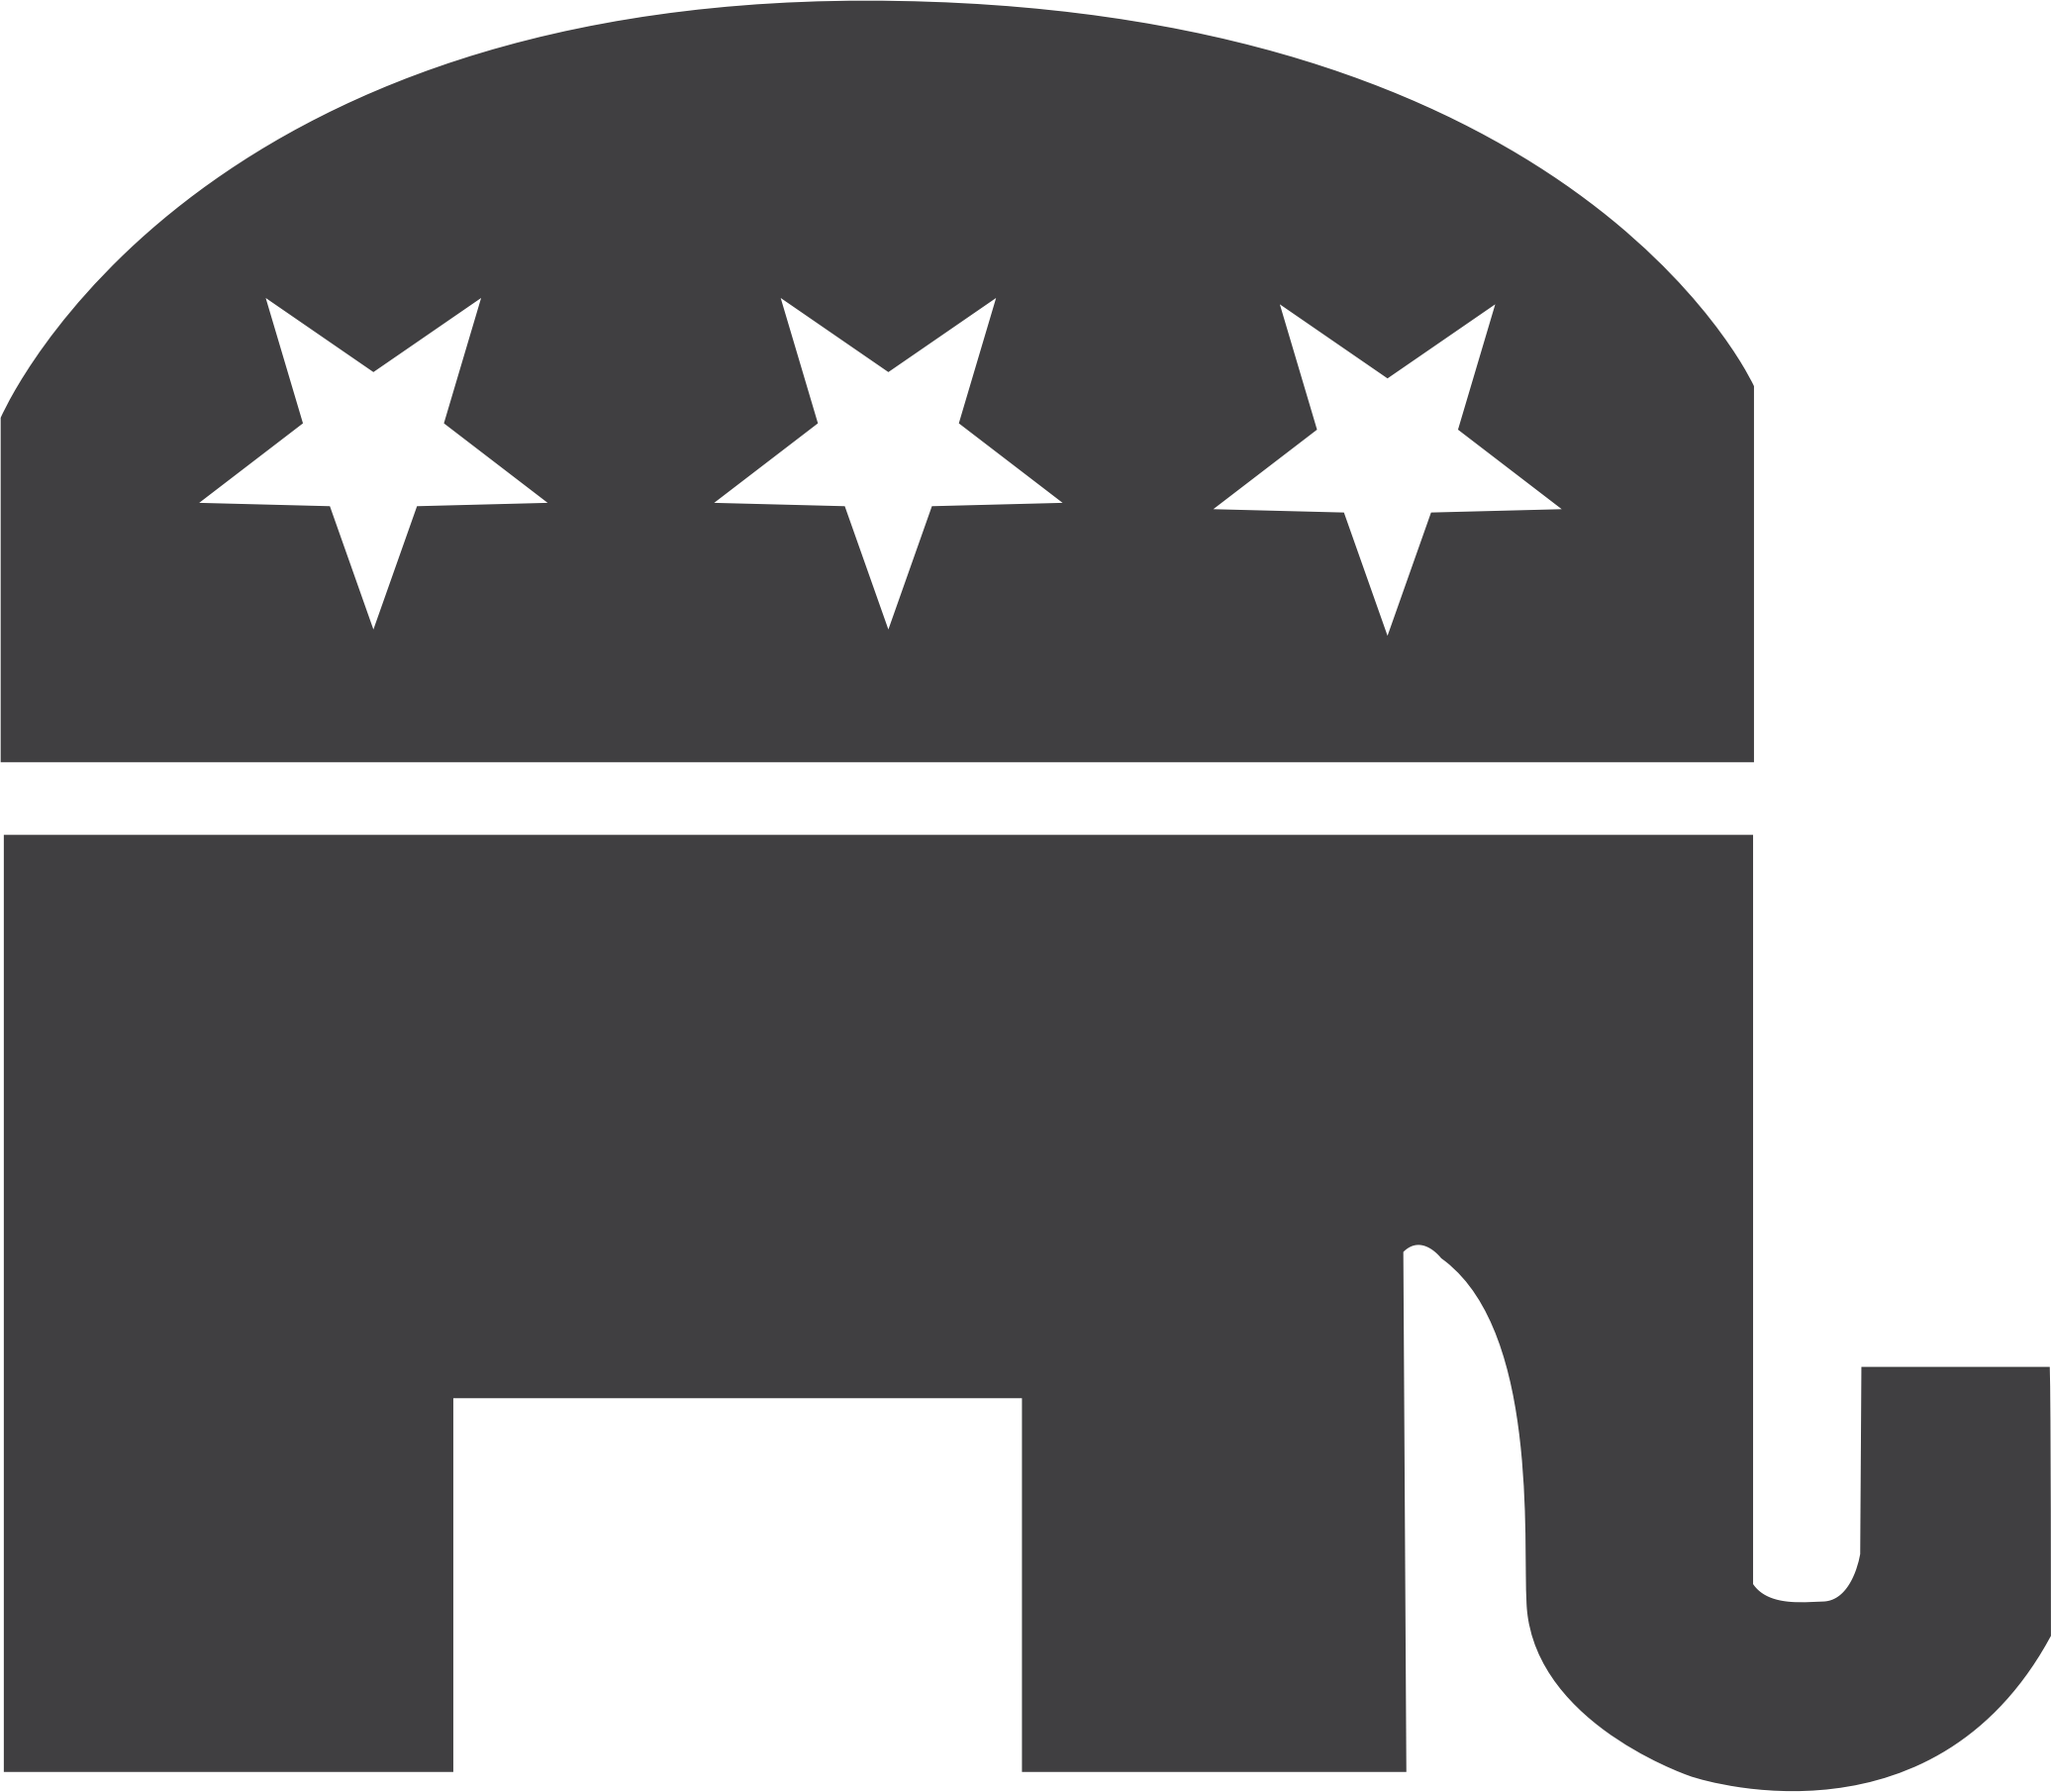 Clipart - republican symbol